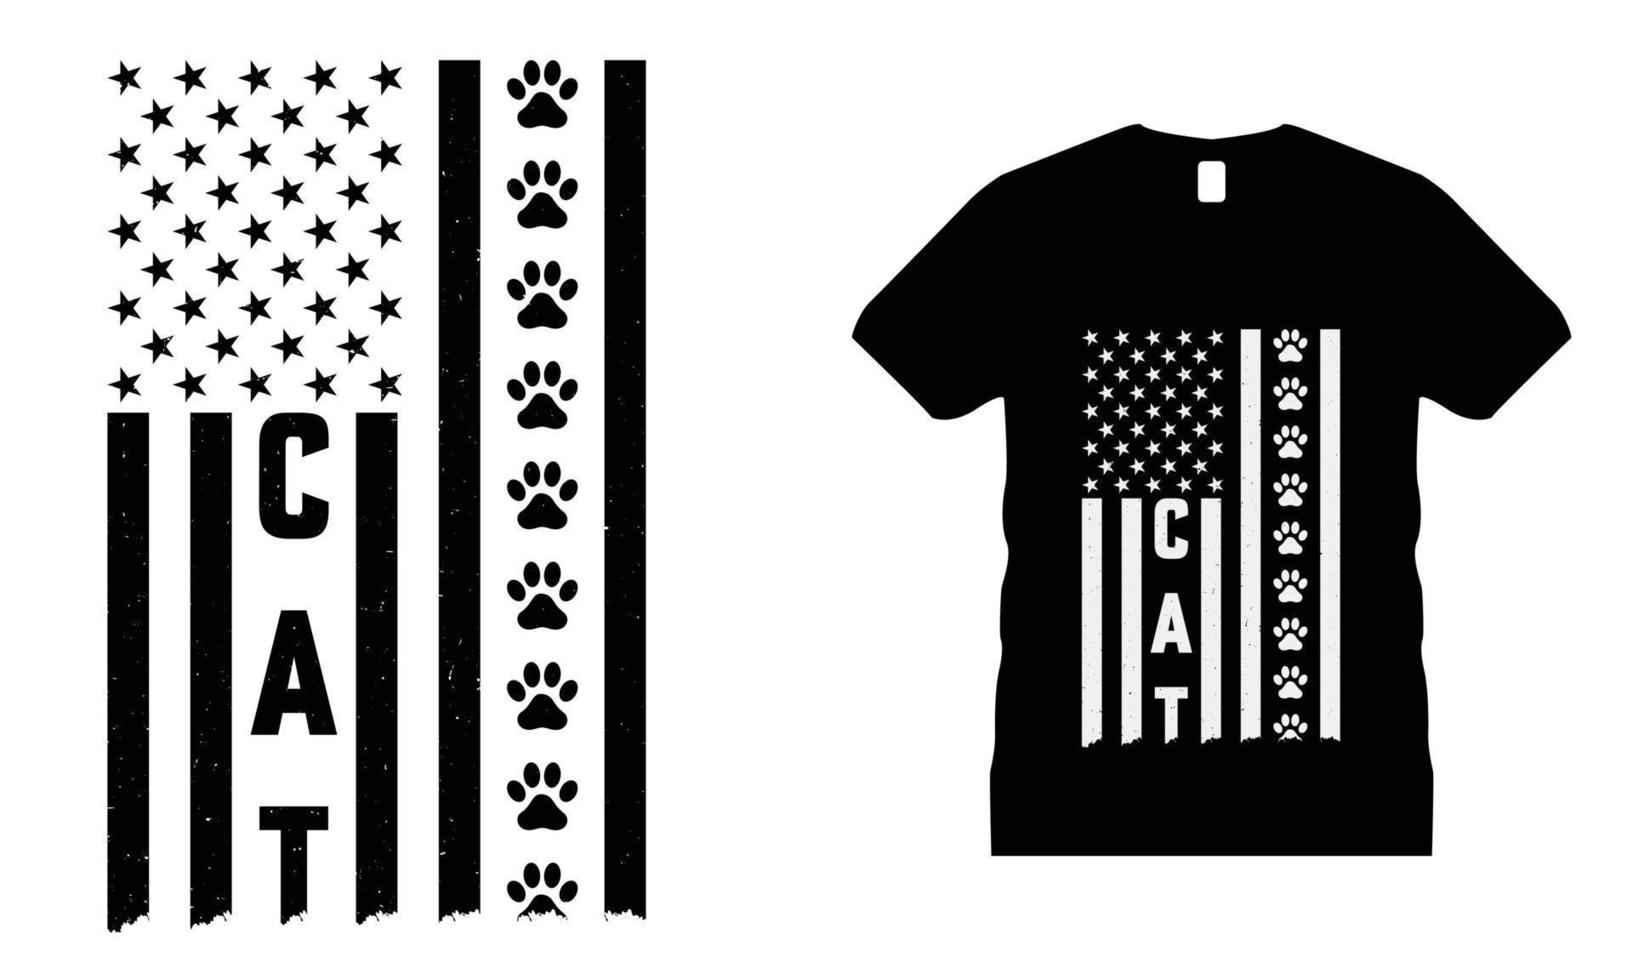 kat dier huisdieren motiverende t-shirt ontwerp vector. gebruik voor t-shirt, mokken, stickers, enz. vector